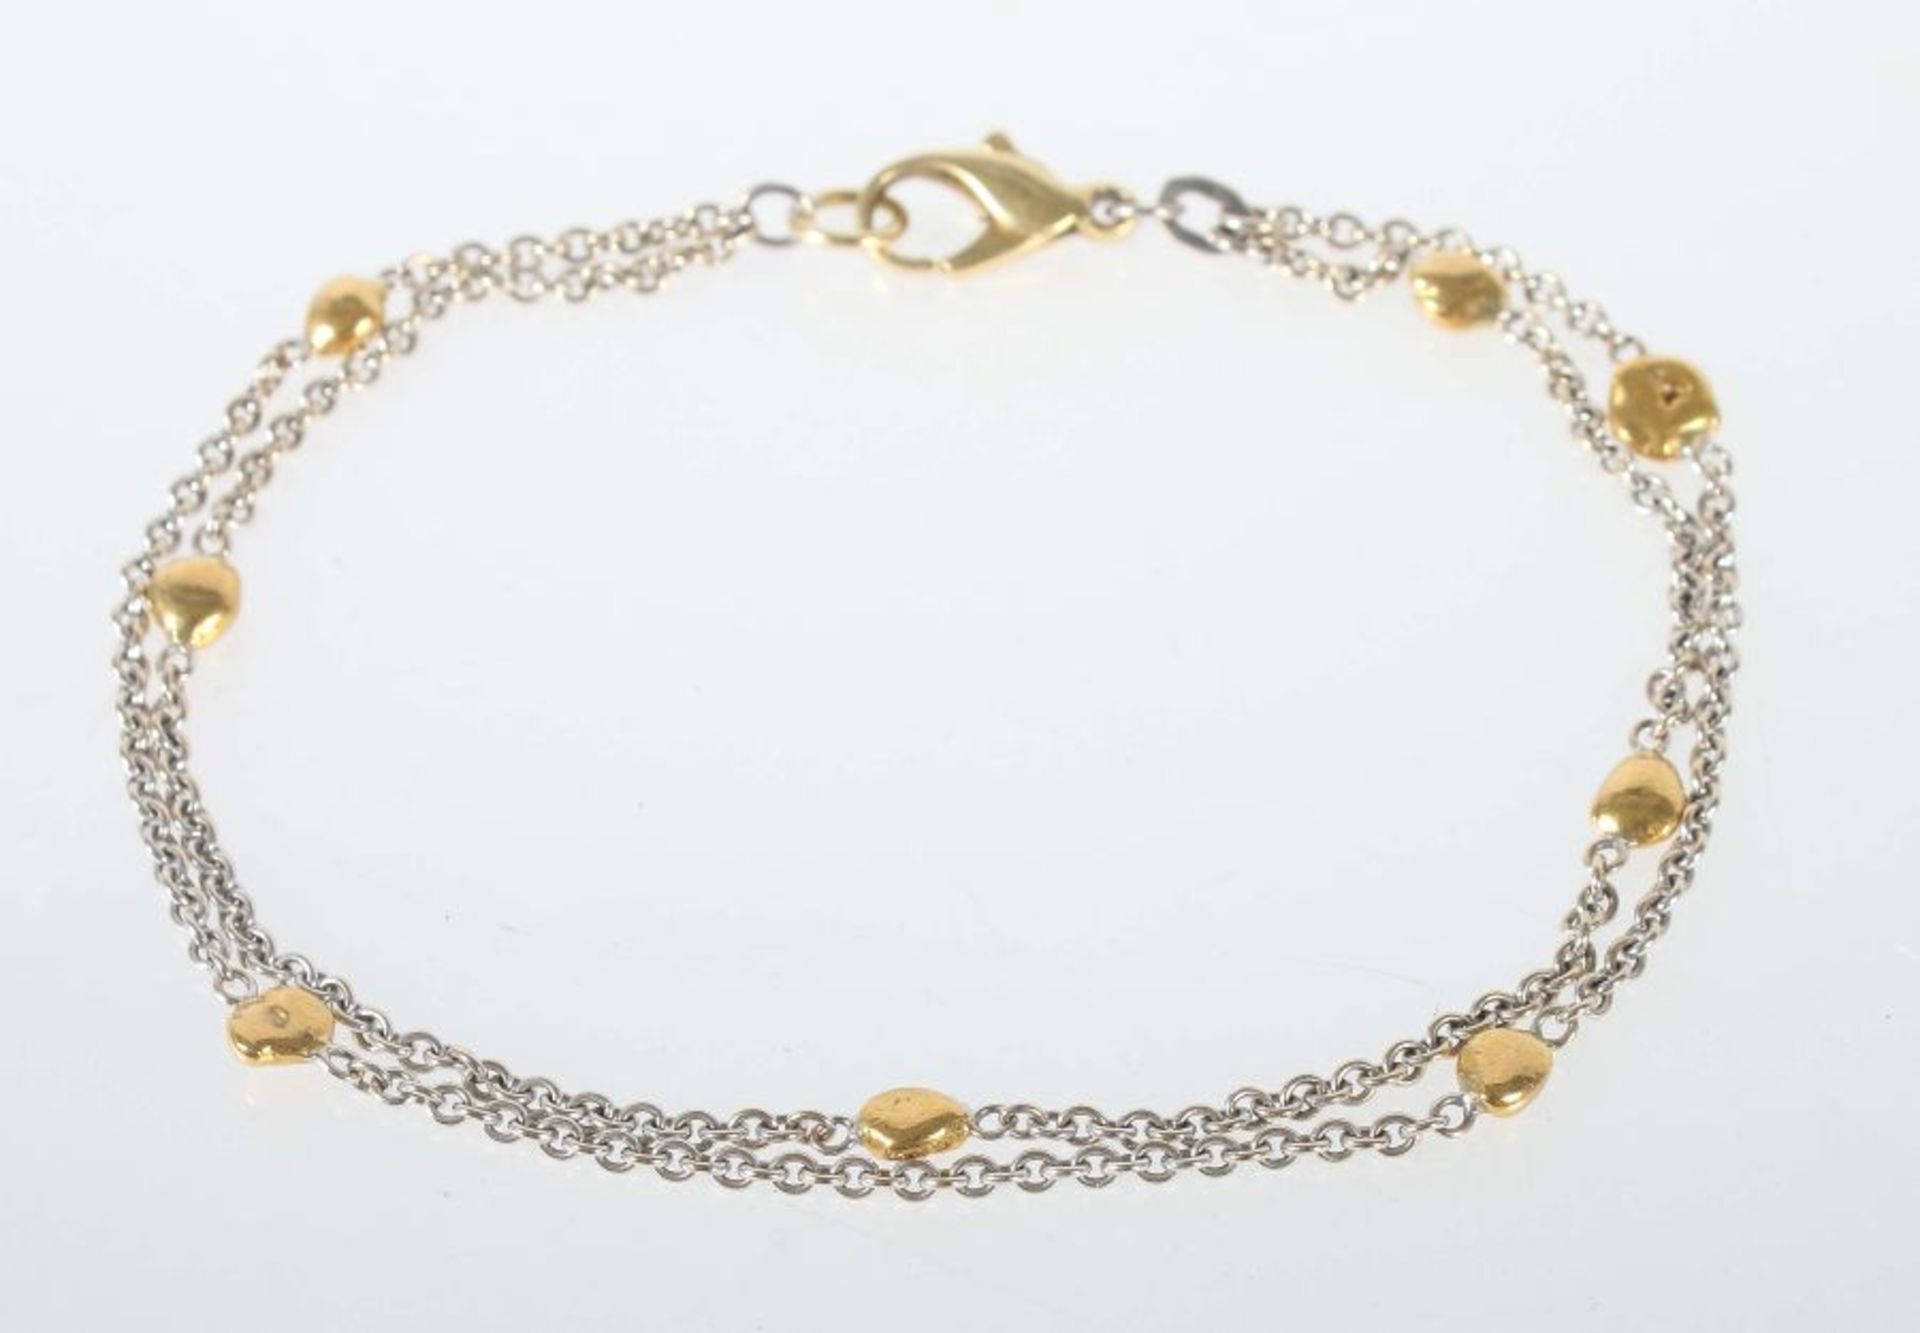 Armbandmodern, Weiß-/Gelbgold 750, 2-reihiges Armband aus Erbskette mit kleinen Elementen inGold-